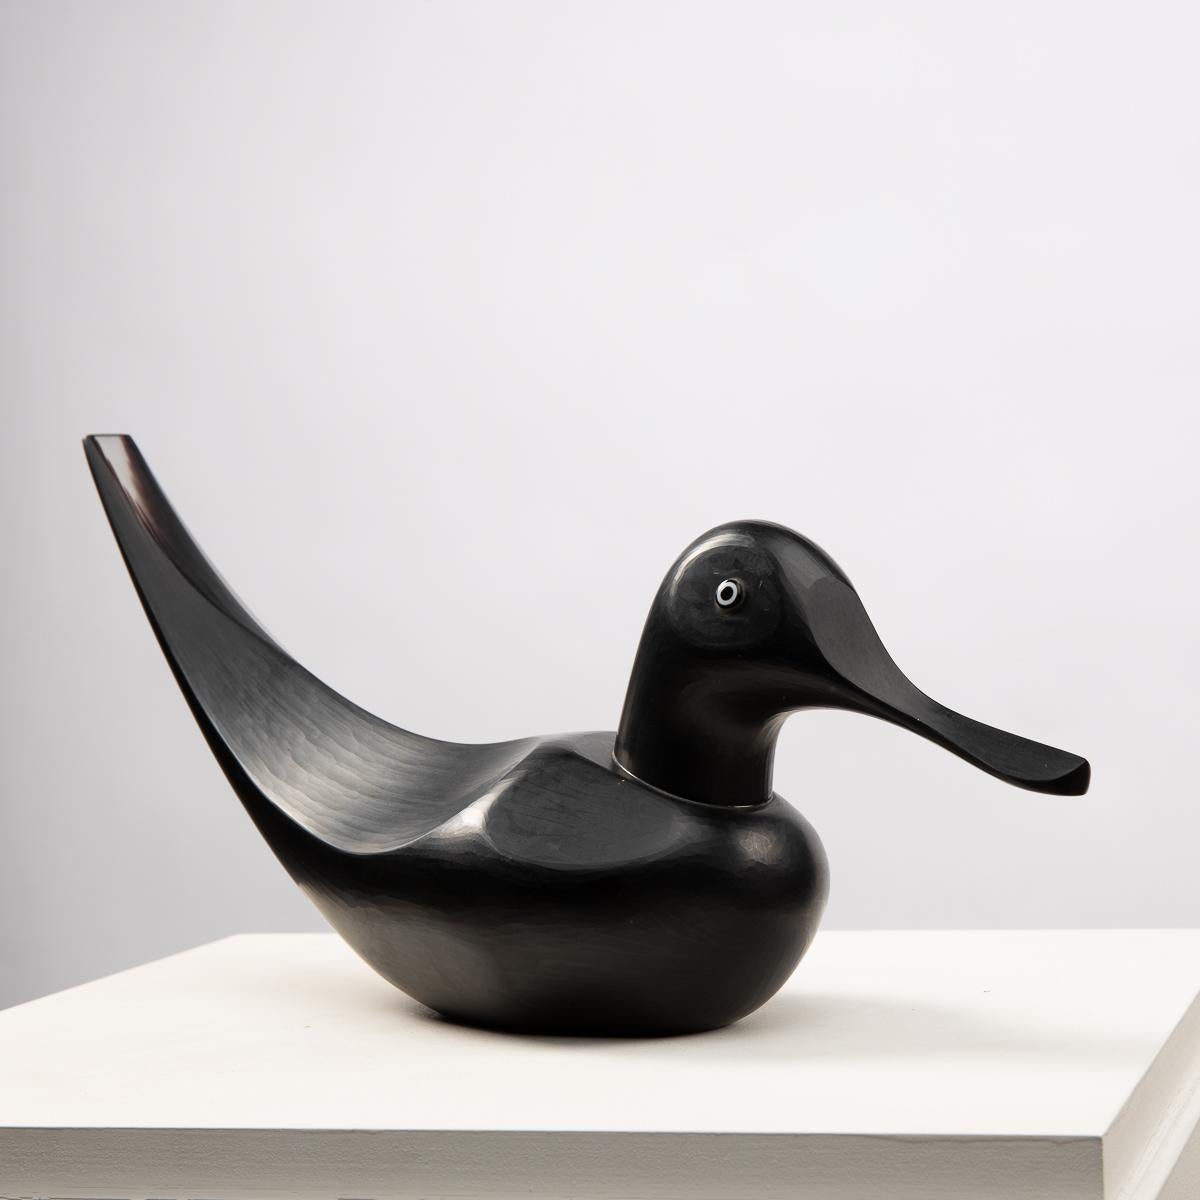 Italian Fischione sculpture of a duck by Toni Zuccheri - Venini ( ITALY )